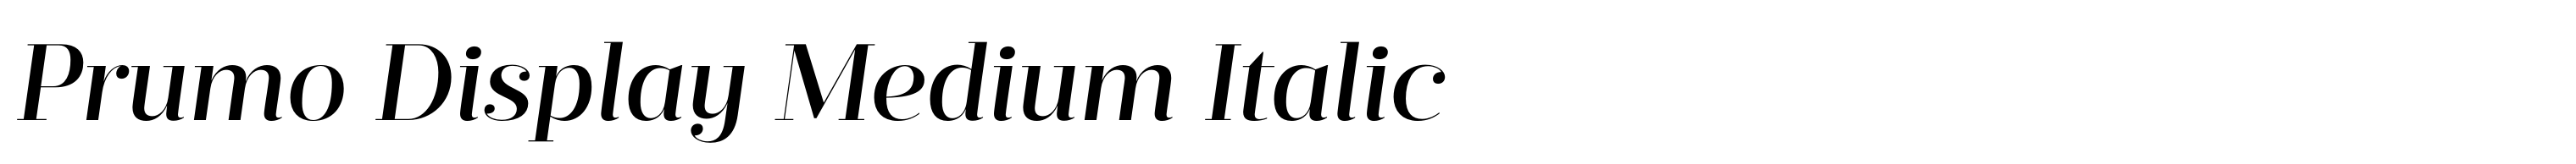 Prumo Display Medium Italic